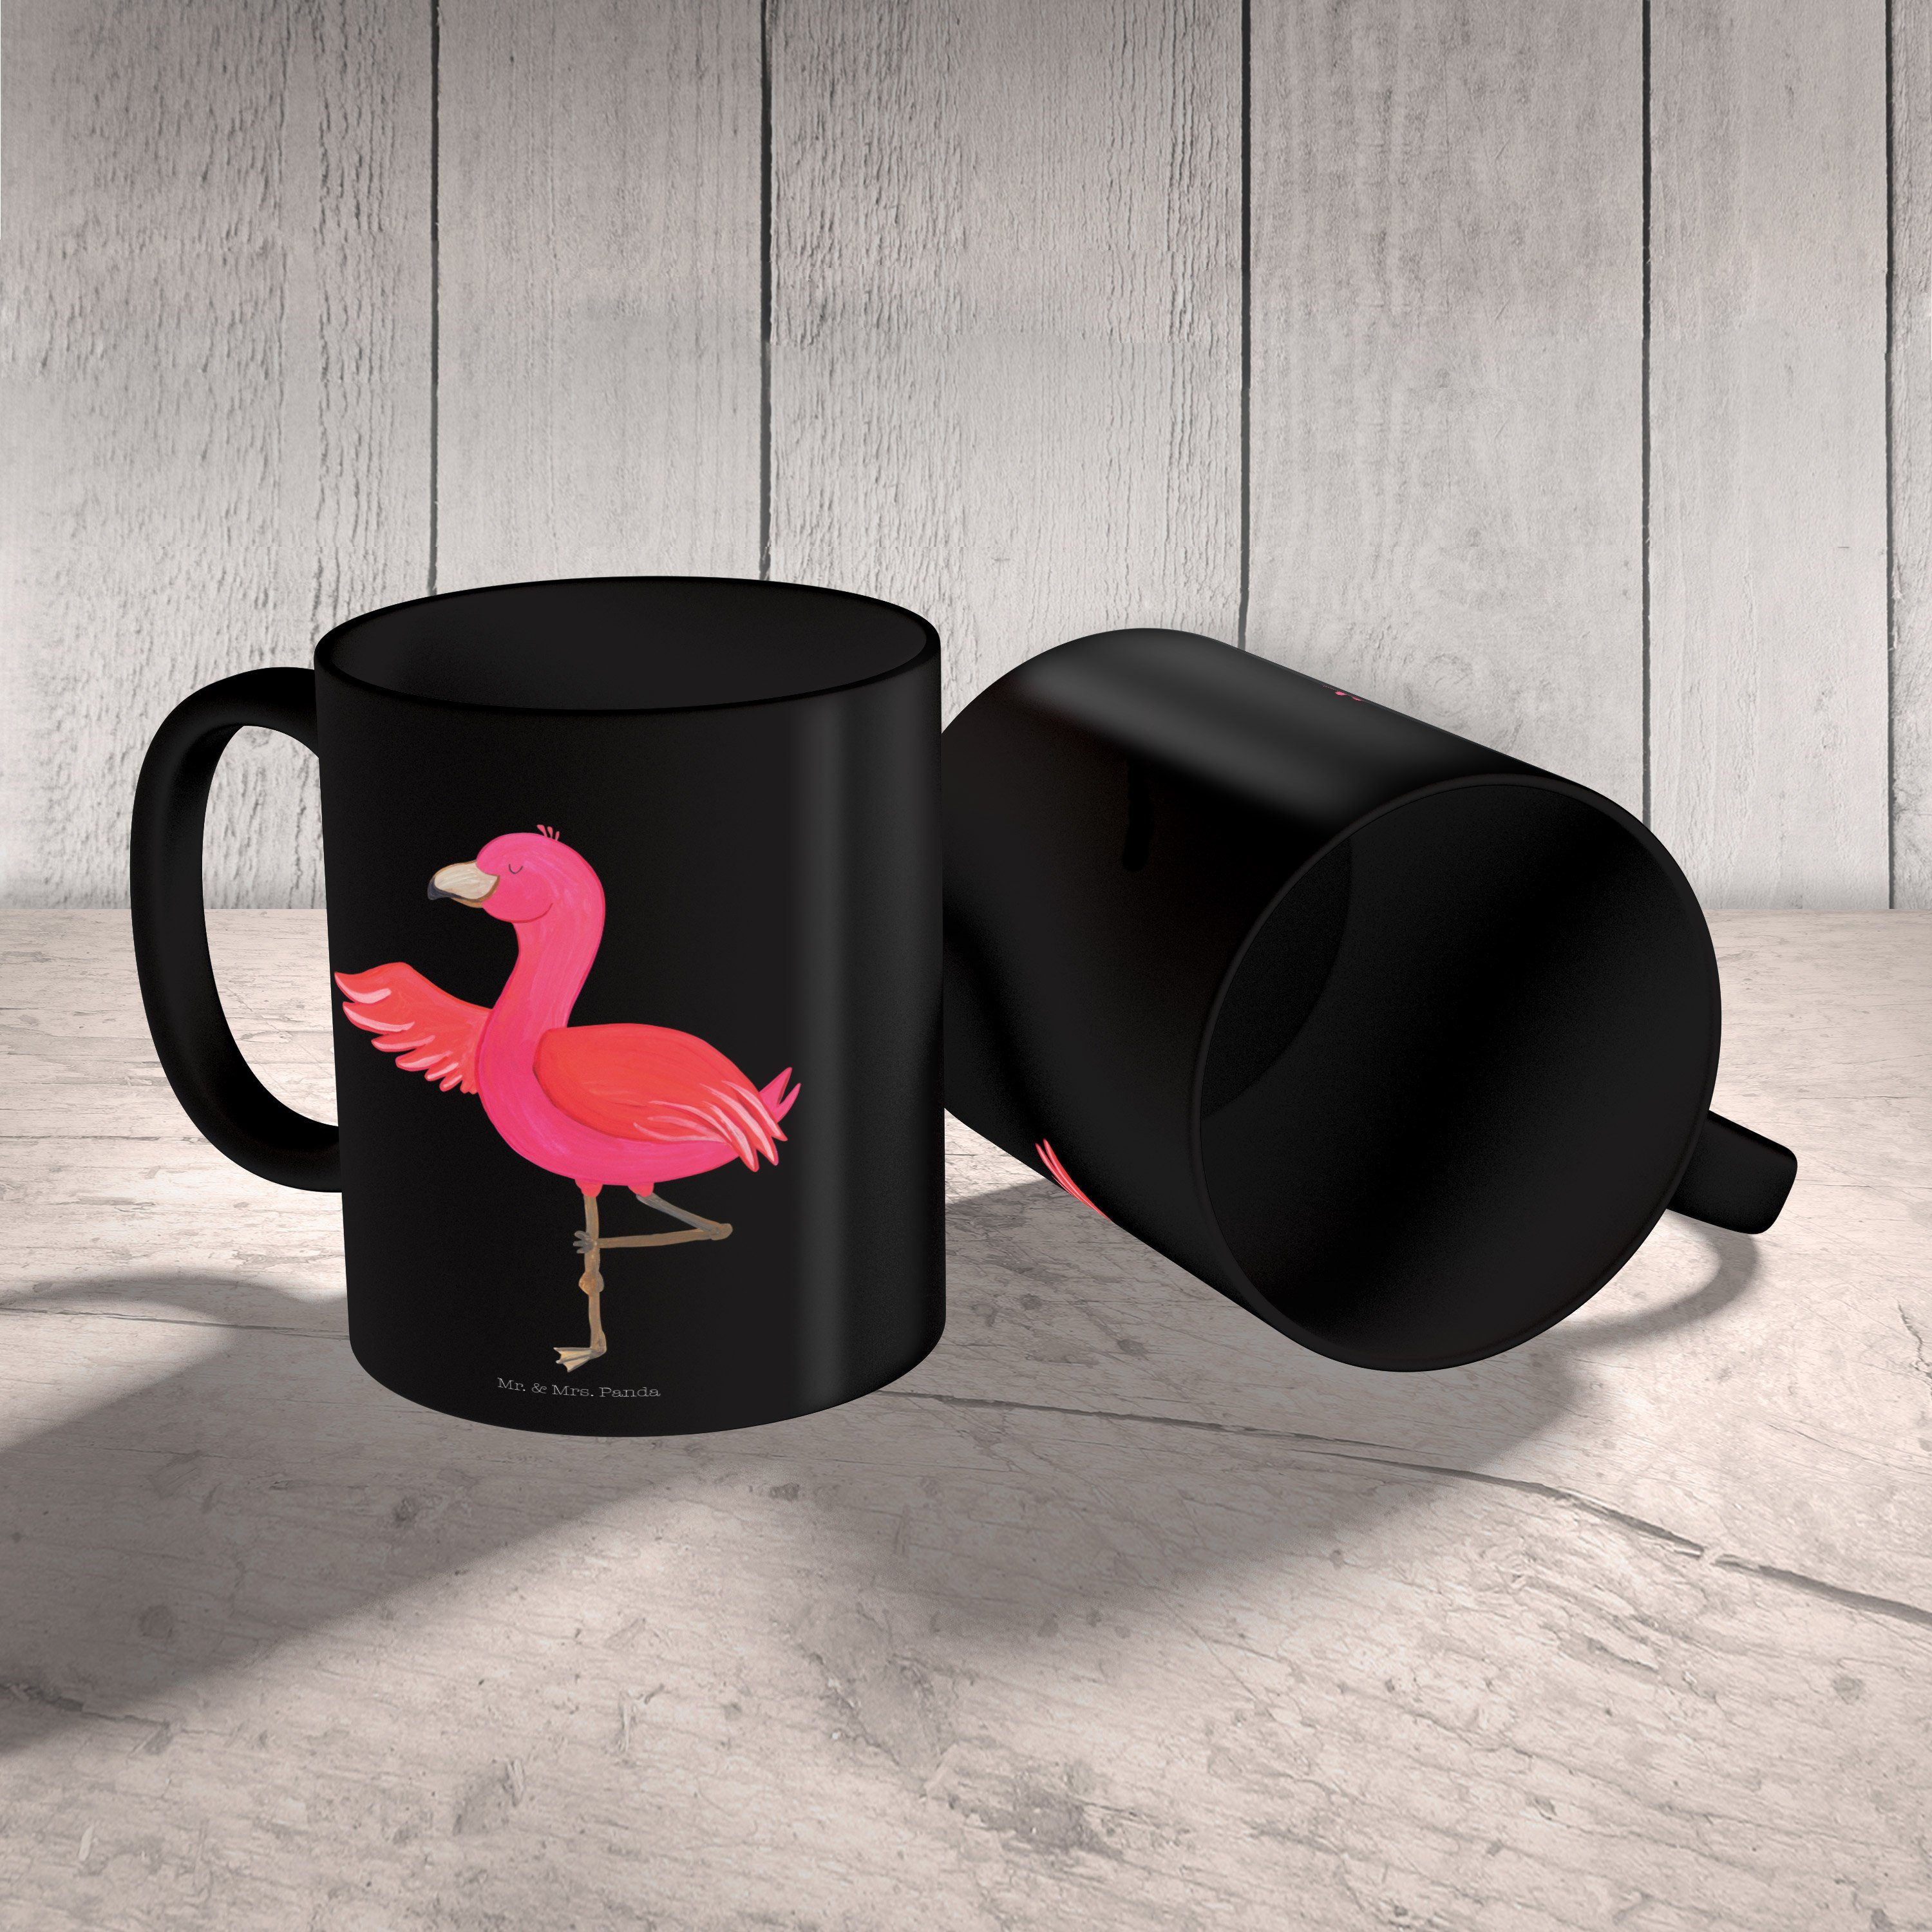 Flamingo Tasse Mr. - - Motive, Panda Schwarz Yoga Schwarz Tasse Geschenk, Kaffeetasse, & Mrs. Keramik Rosa,